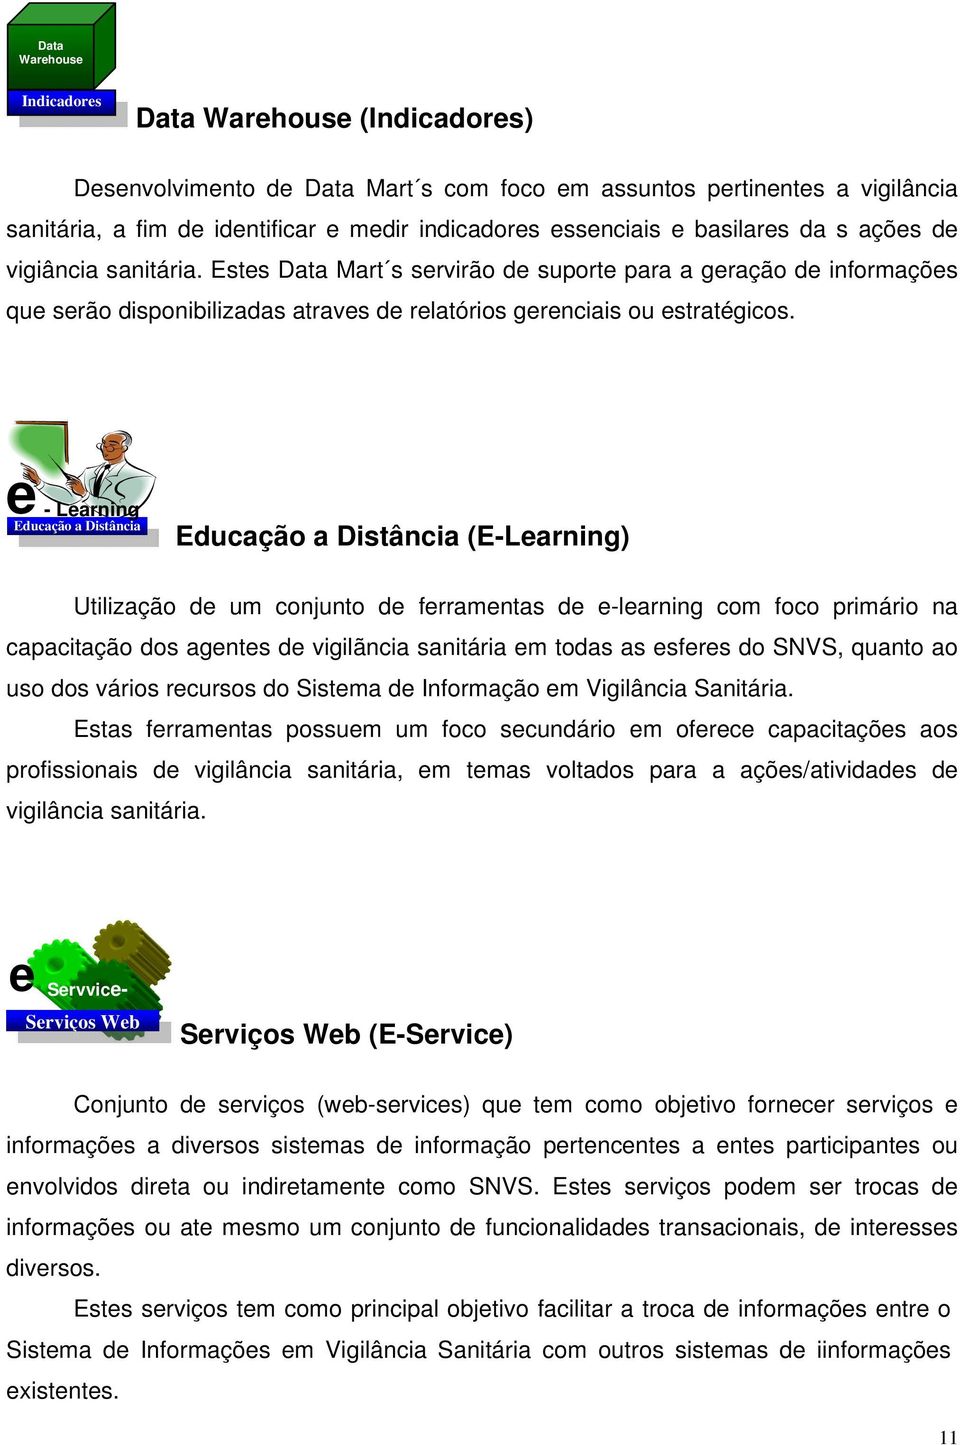 e - Learning Educação a Distância Educação a Distância (E-Learning) Utilização de um conjunto de ferramentas de e-learning com foco primário na capacitação dos agentes de vigilãncia sanitária em